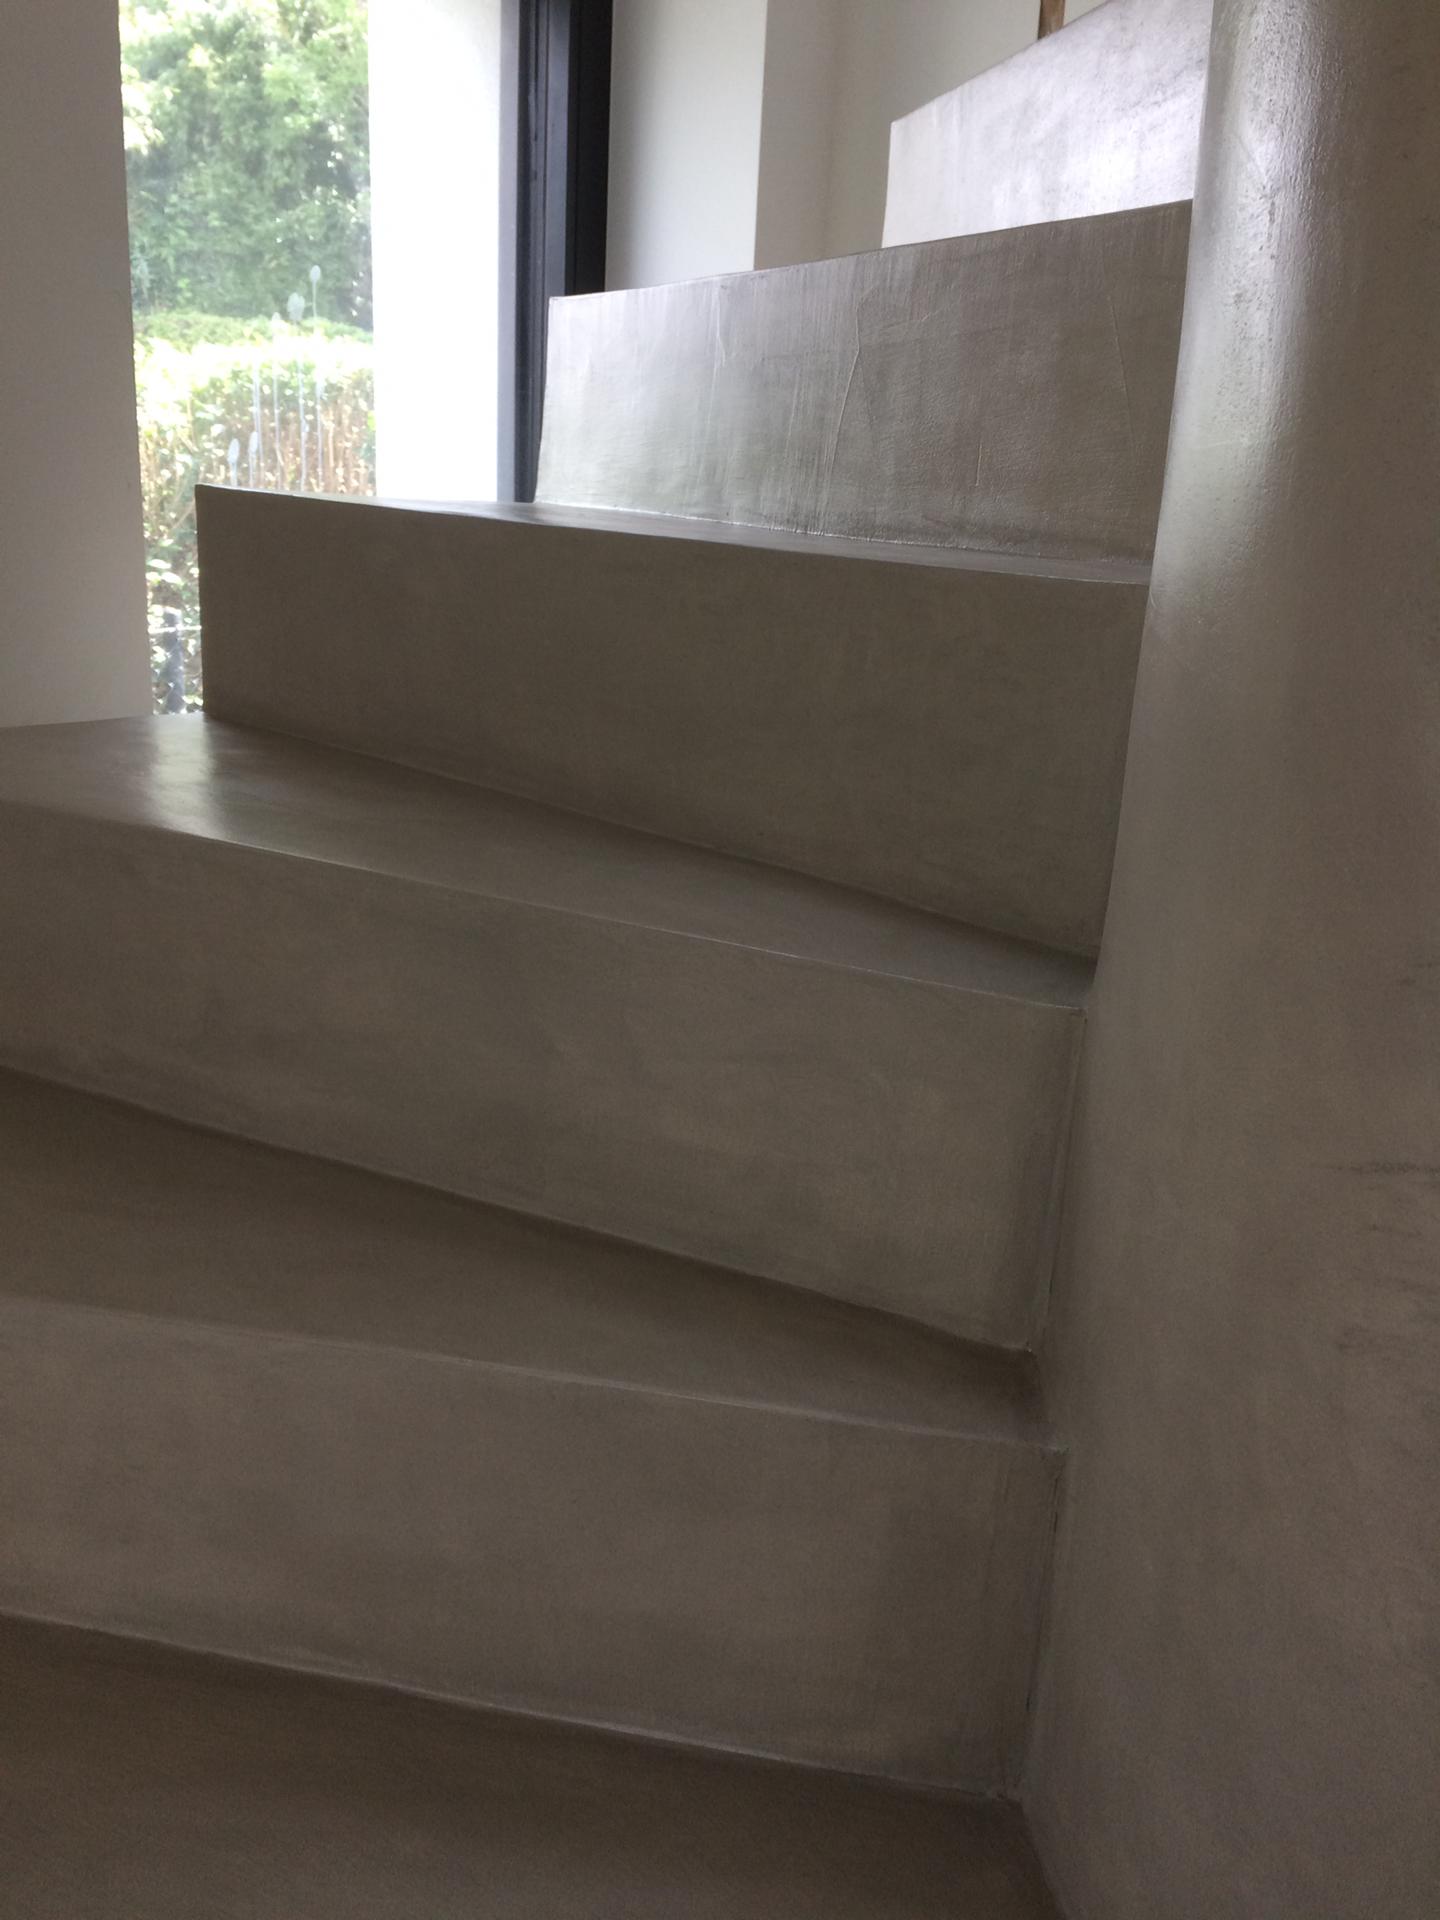 magnifique escalier en colimaçon avec garde corps intérieur en béton ciré vernis soyeux bruxelles pour un constructeur